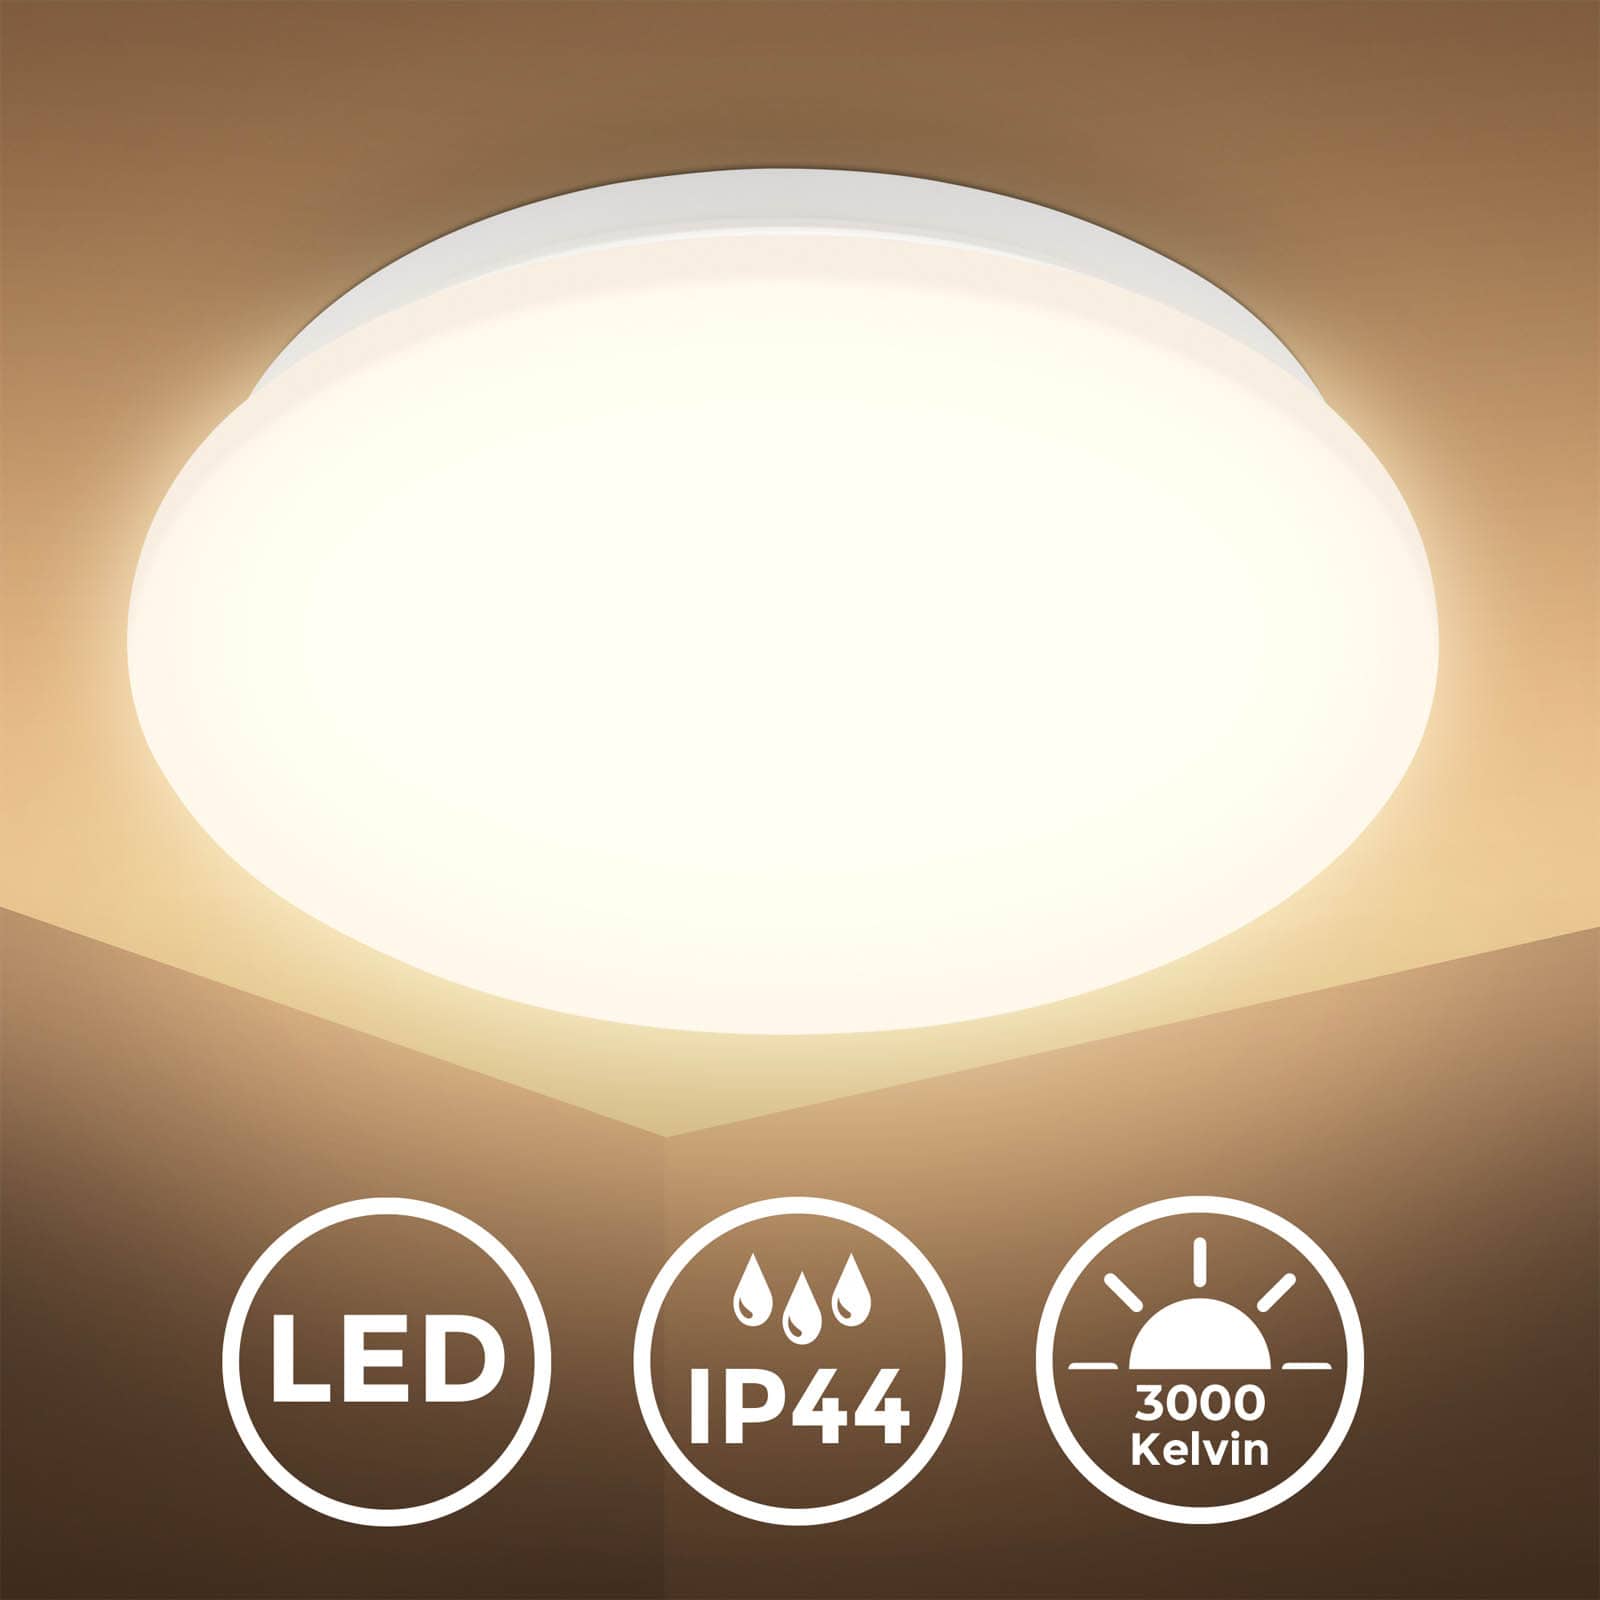 LED Bad-Deckenleuchte IP44 mit Bewegungsmelder - 27cm - Deckenlampe rund 1-flammig Flur 60mm 12W 1300lm 3000K warmweiß | weiß - 1